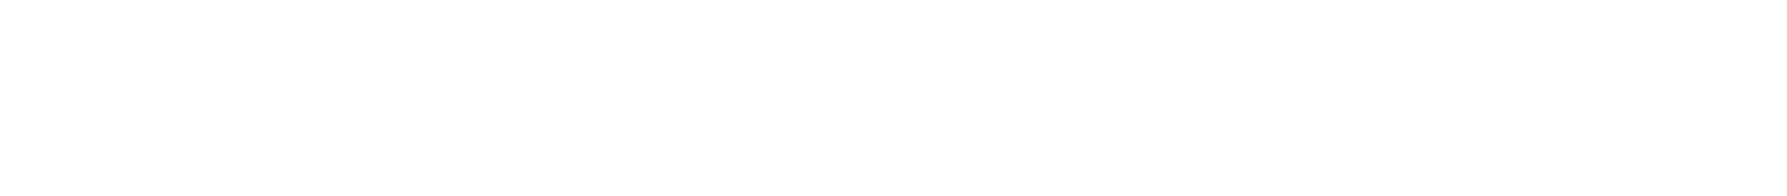 techwear logo shadxw